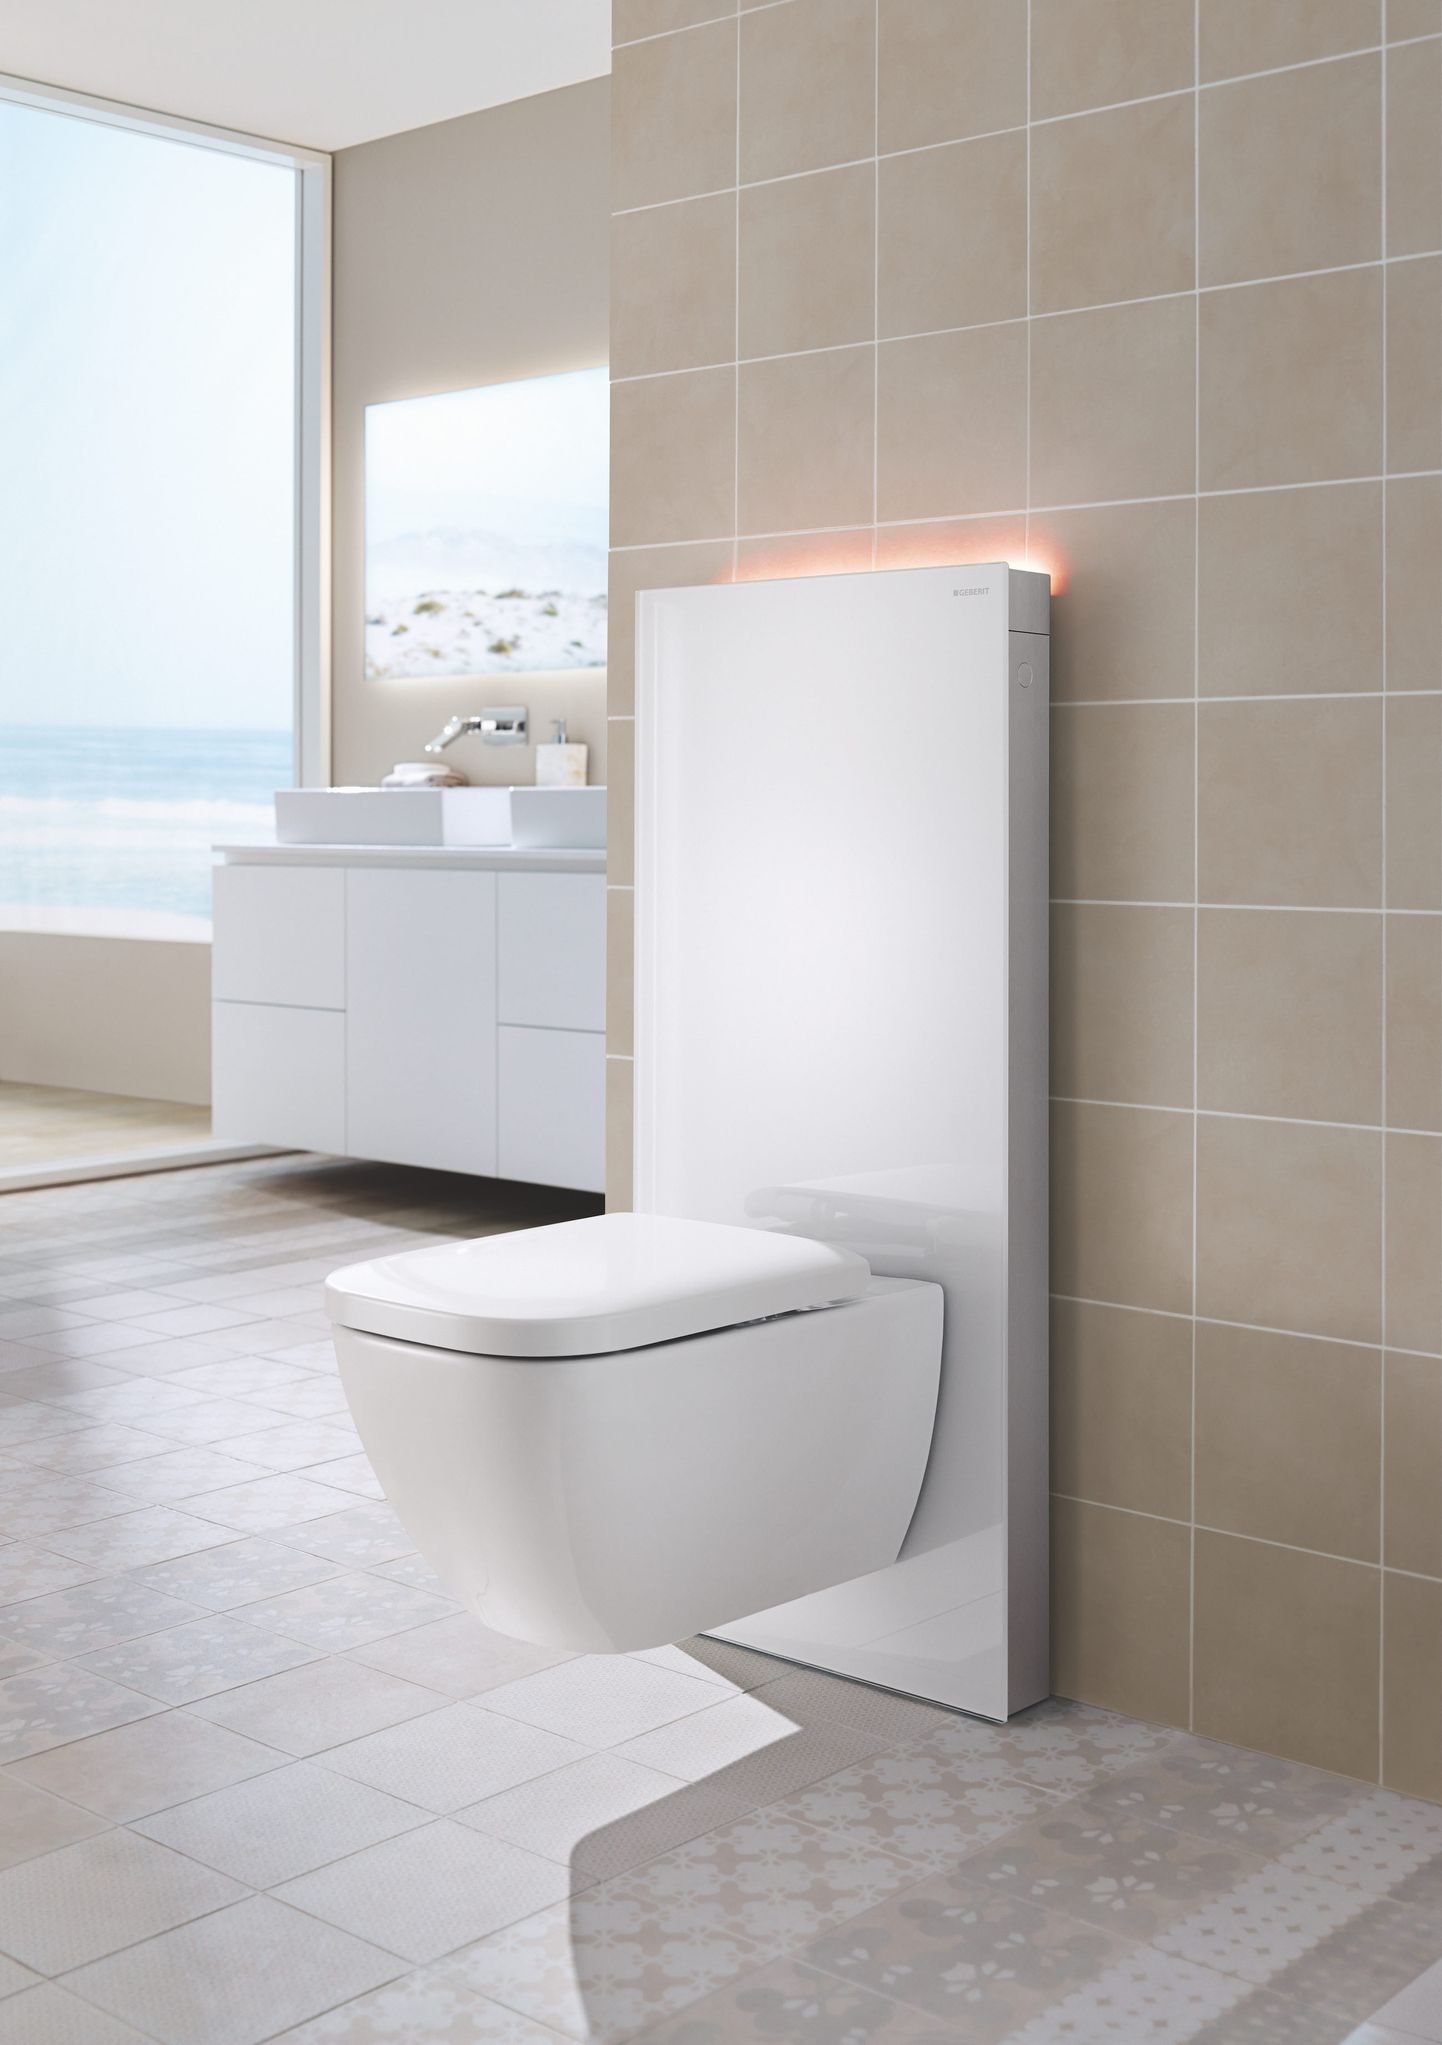 Onnineni kvaliteetsete vannitoalahenduste tarnijate hulka kuuluvad Gustavsberg, Geberit, Oras, ja Hansgrohe ja Aco Nordic – vannitoa äravoolude terviklahenduse pakkuja.